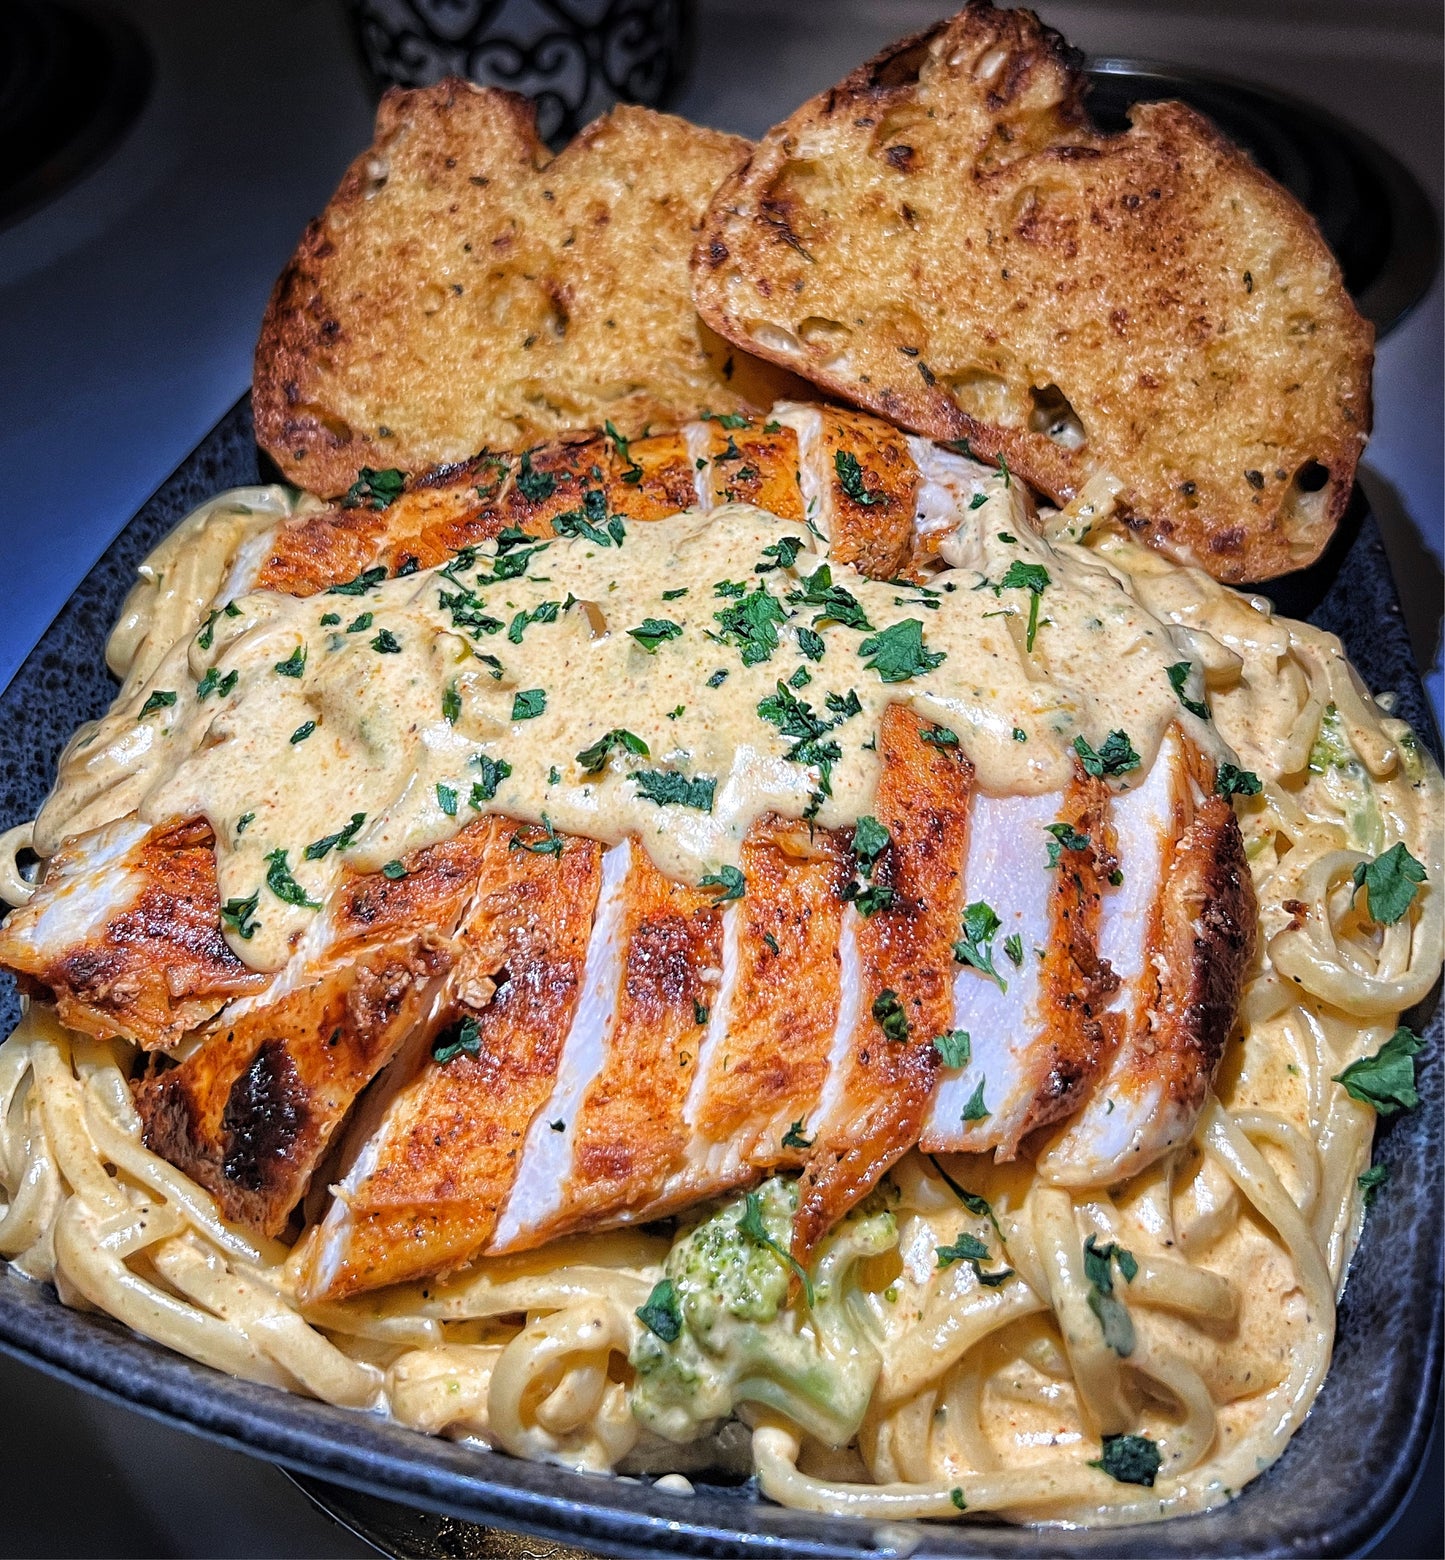 Chicken Alfredo with linguine pasta